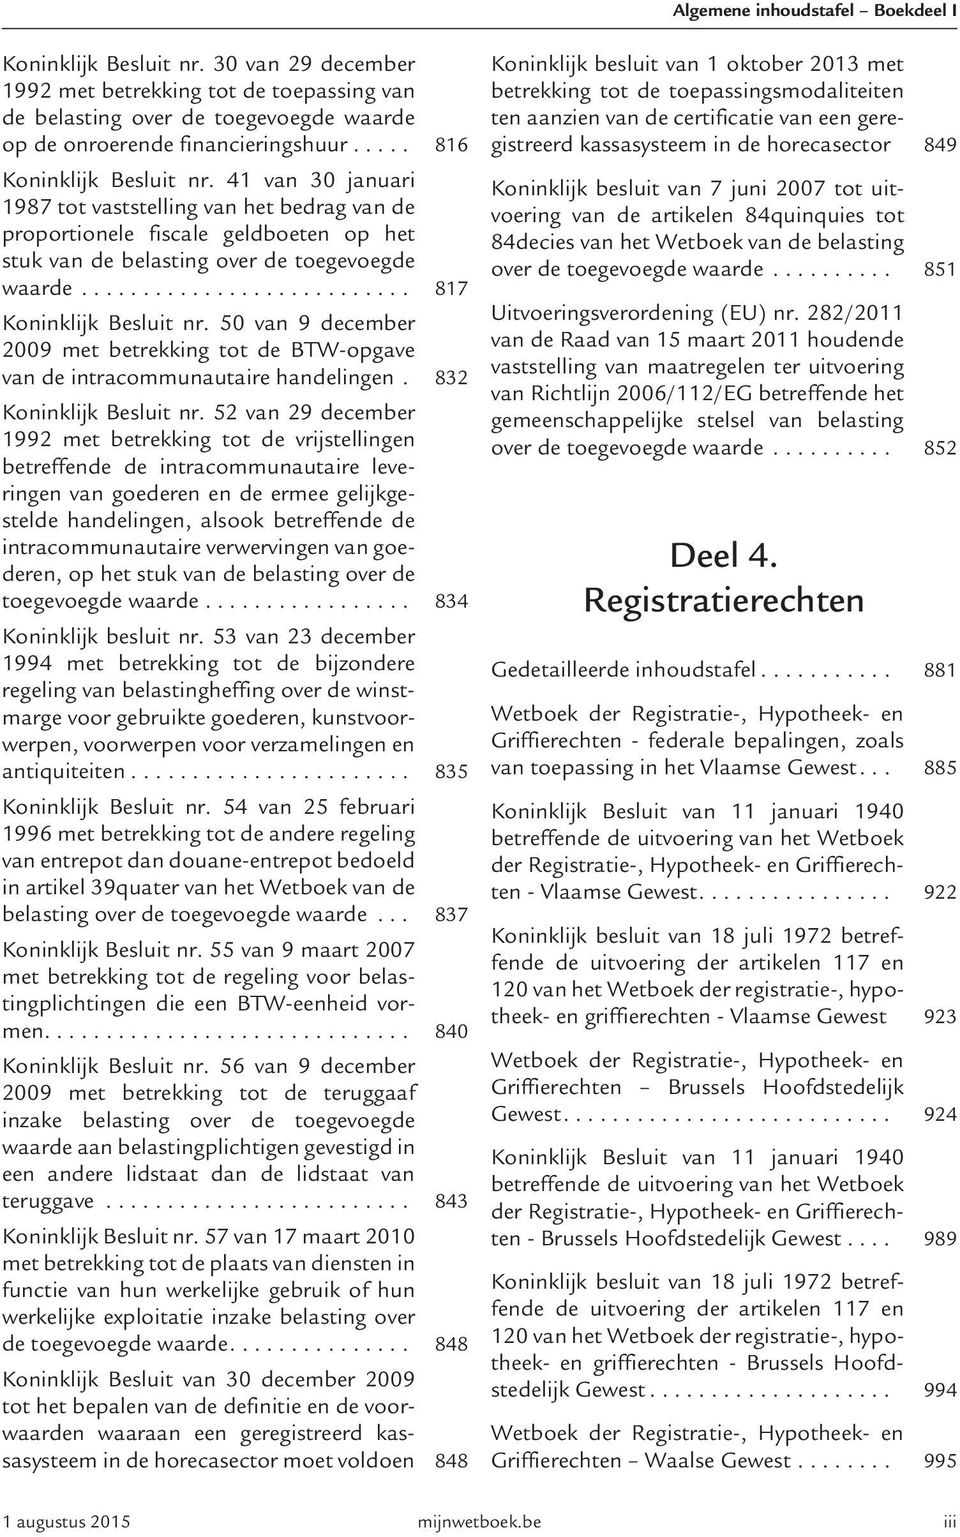 50 van 9 december 2009 met betrekking tot de BTW-opgave van de intracommunautaire handelingen. 832 Koninklijk Besluit nr.